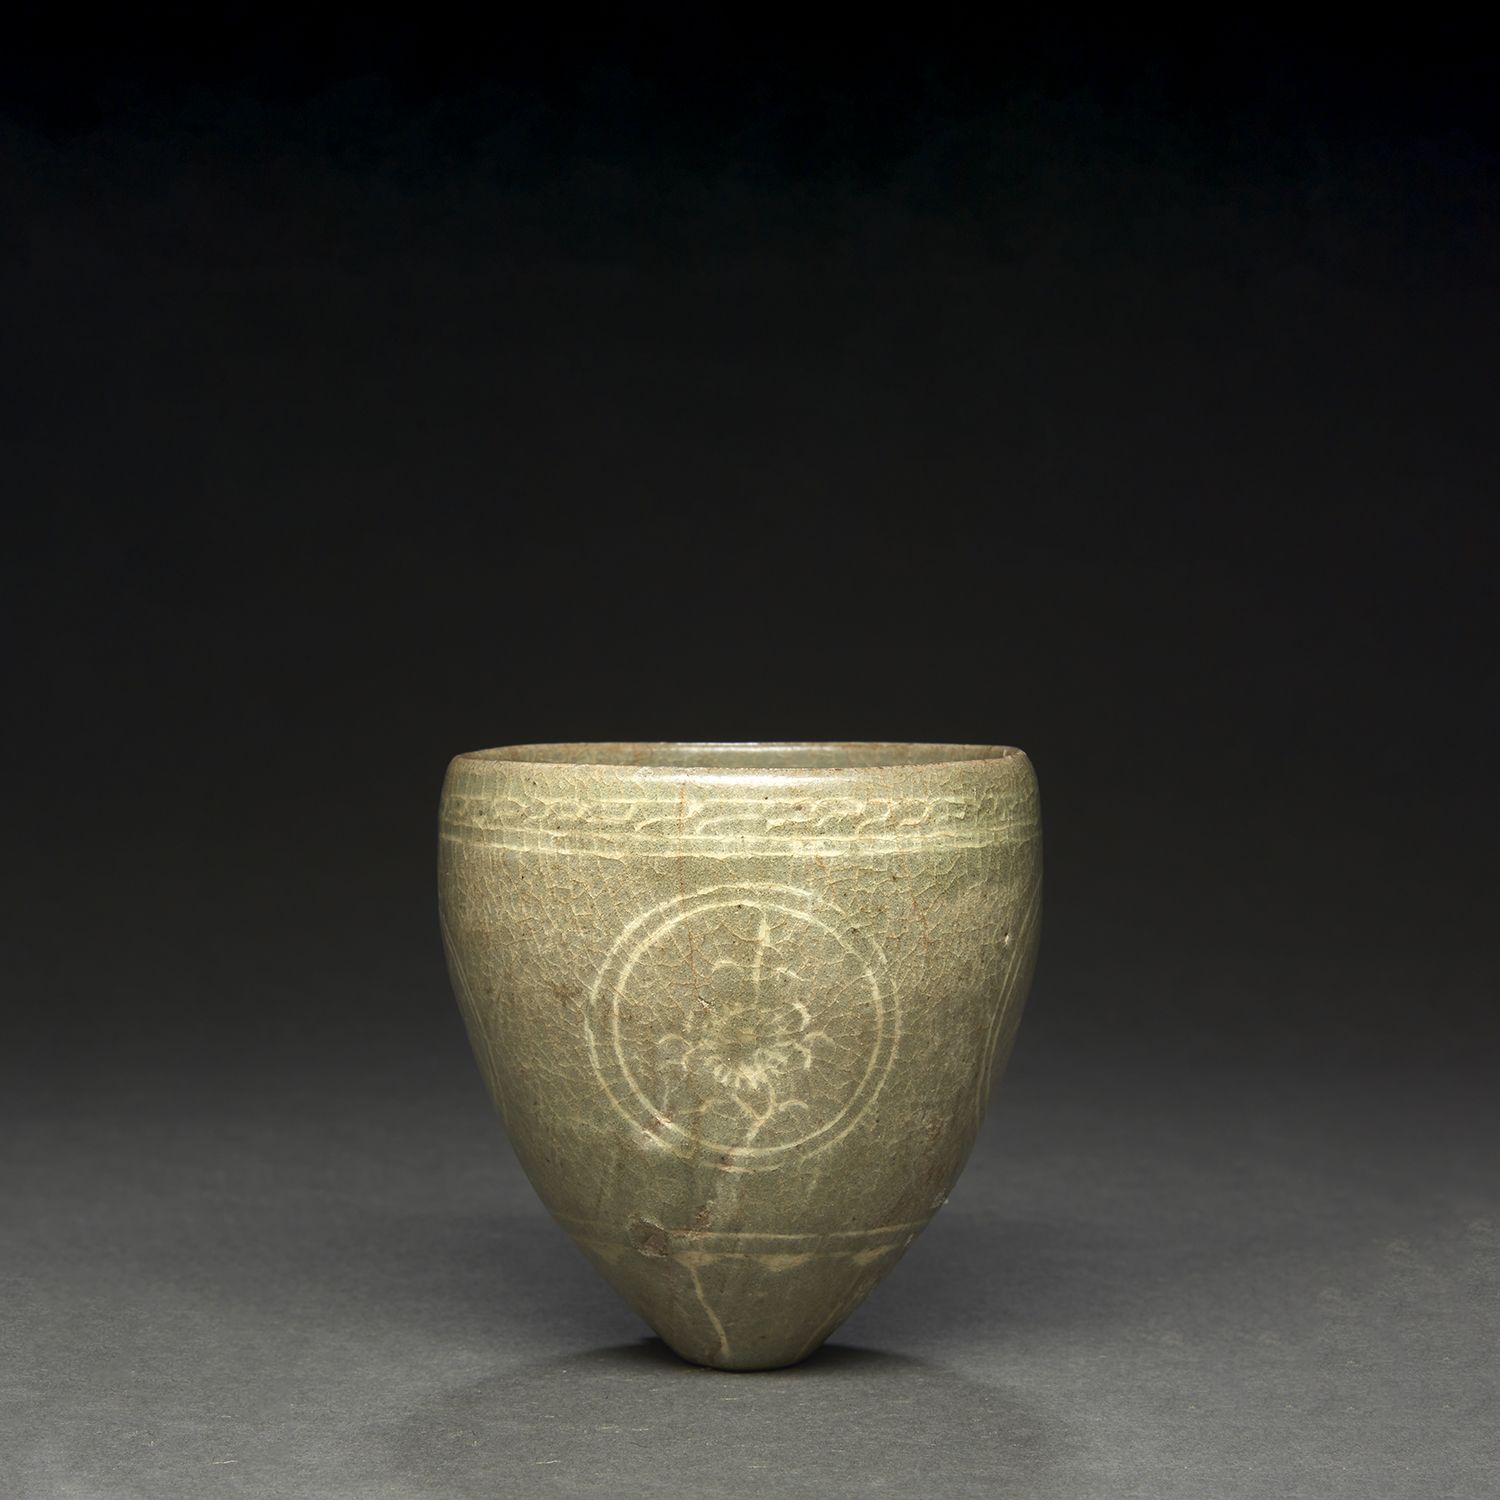 Null 一个白色和青瓷釉的瓷杯
，圆边从平点向上翻到弧形边缘，饰有花纹的奖章。
韩国，高丽王朝，13-14世纪。
镶嵌青瓷的马镫杯，韩国，13-14世纪。
高&hellip;